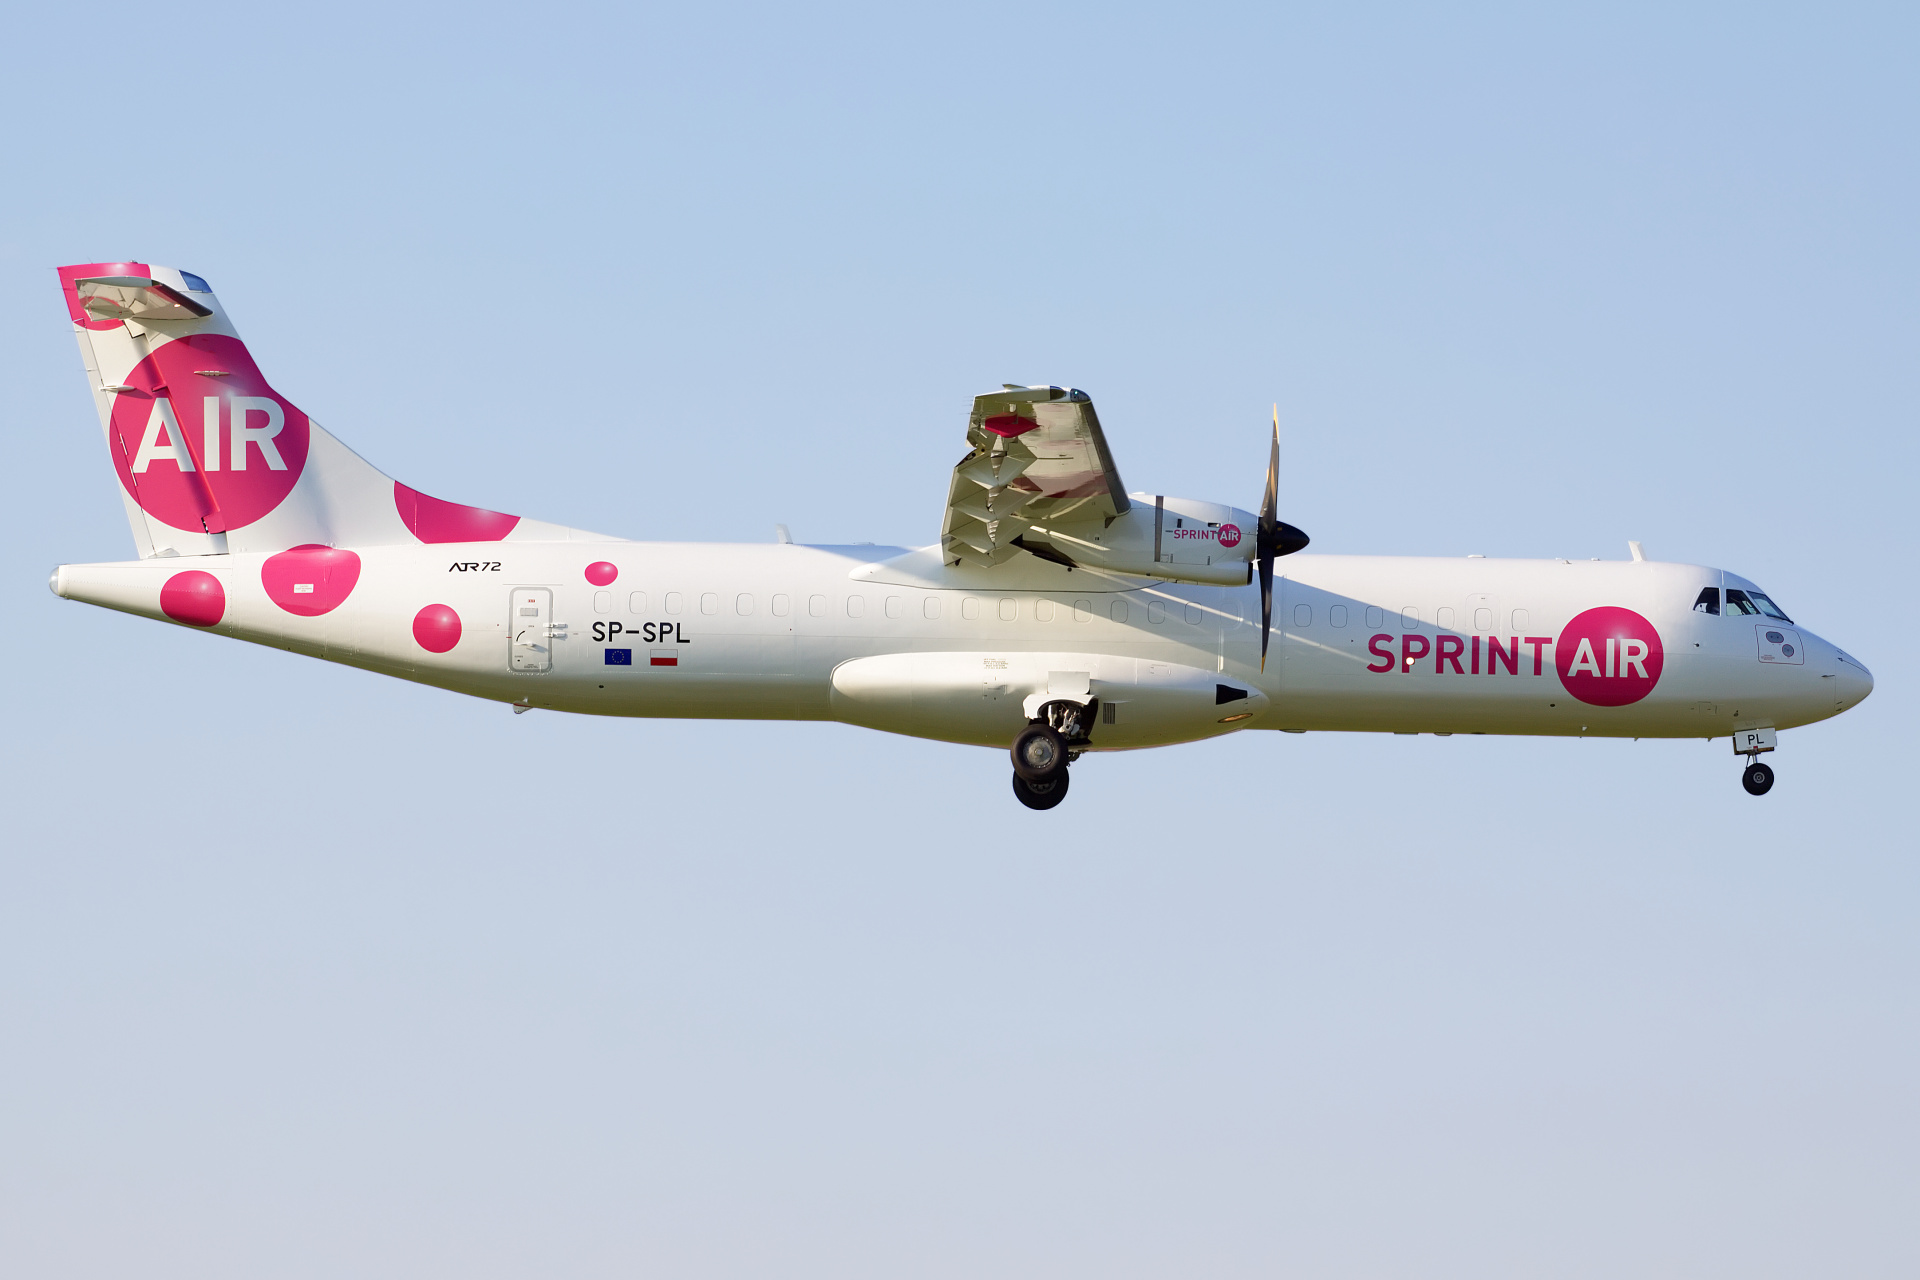 SP-SPL (Samoloty » Spotting na EPWA » ATR 72 » SprintAir)